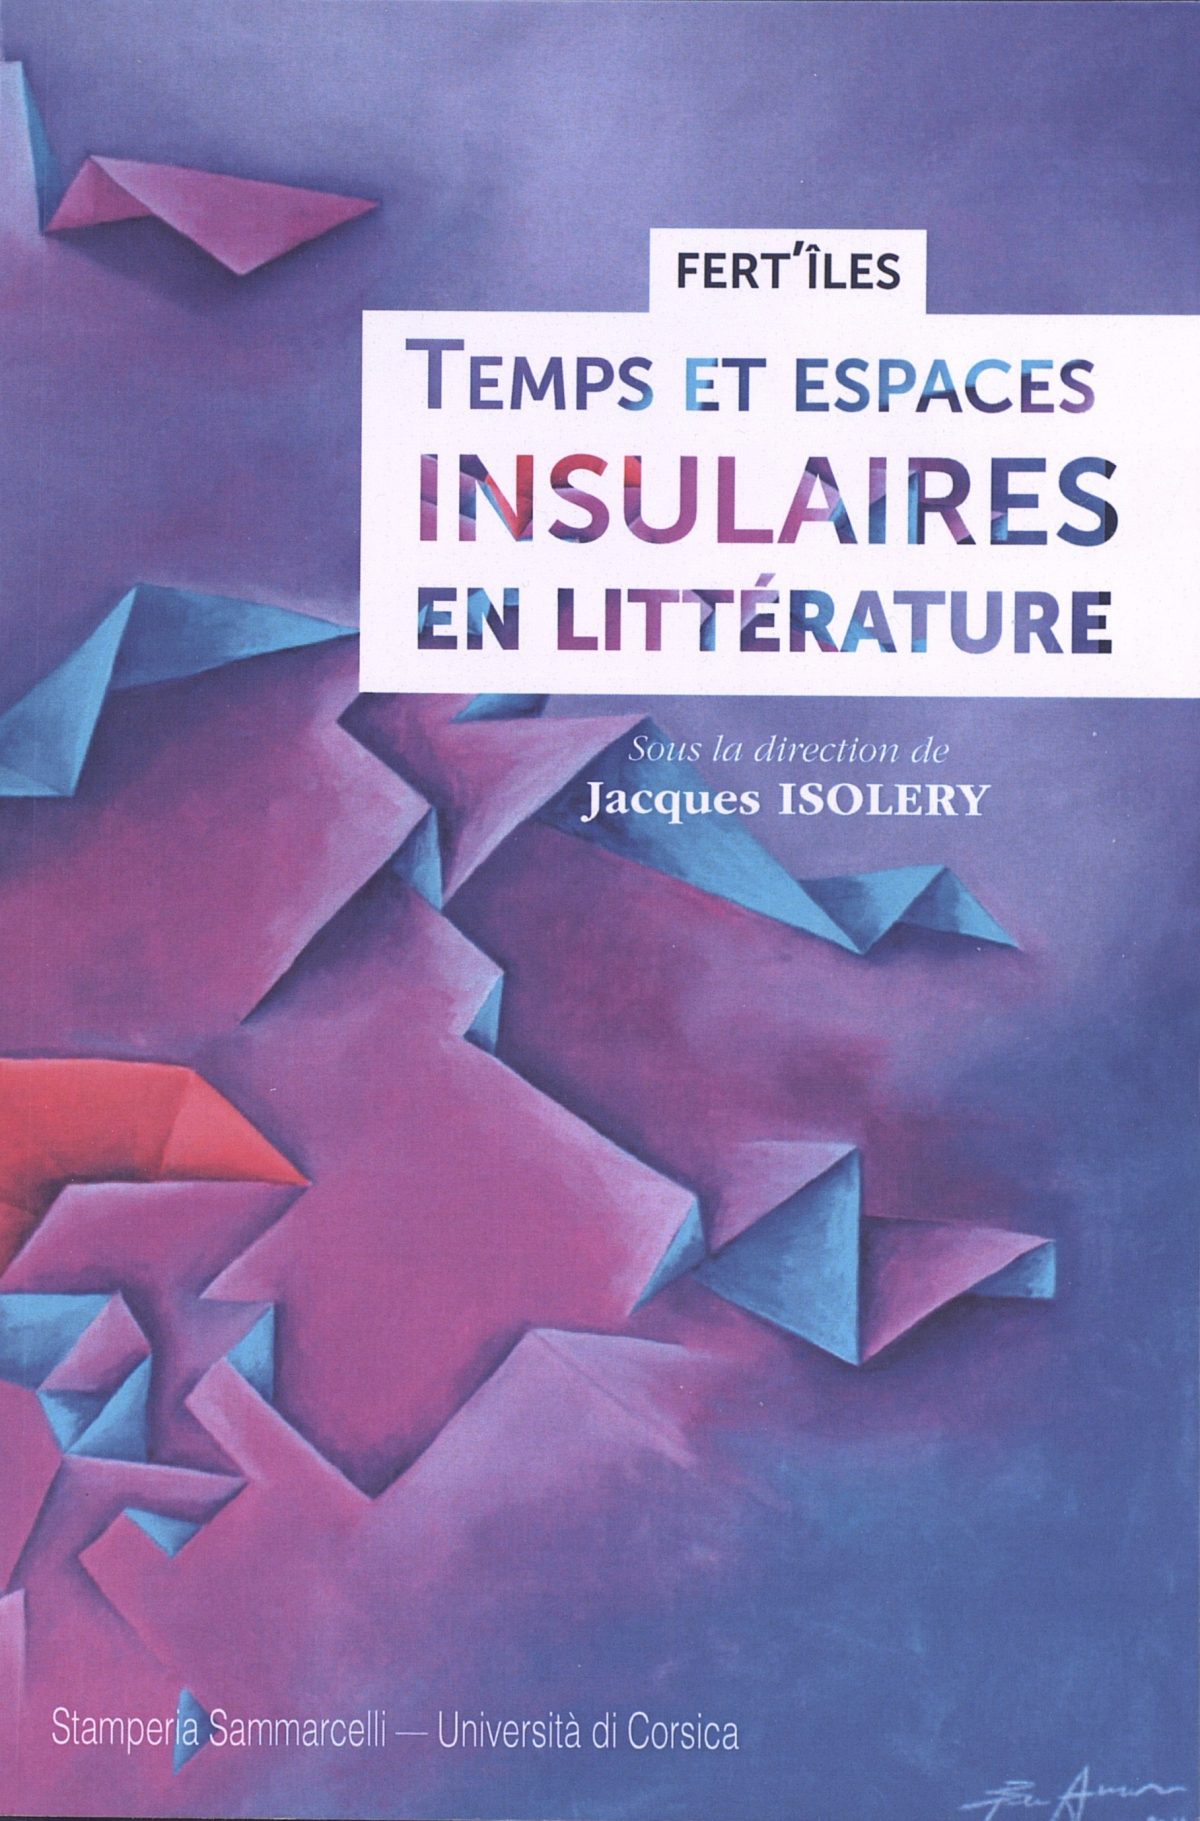 Fert-îles, Temps et espaces insulaires en littérature, Biguglia : Éditions Sammarcelli, 2013